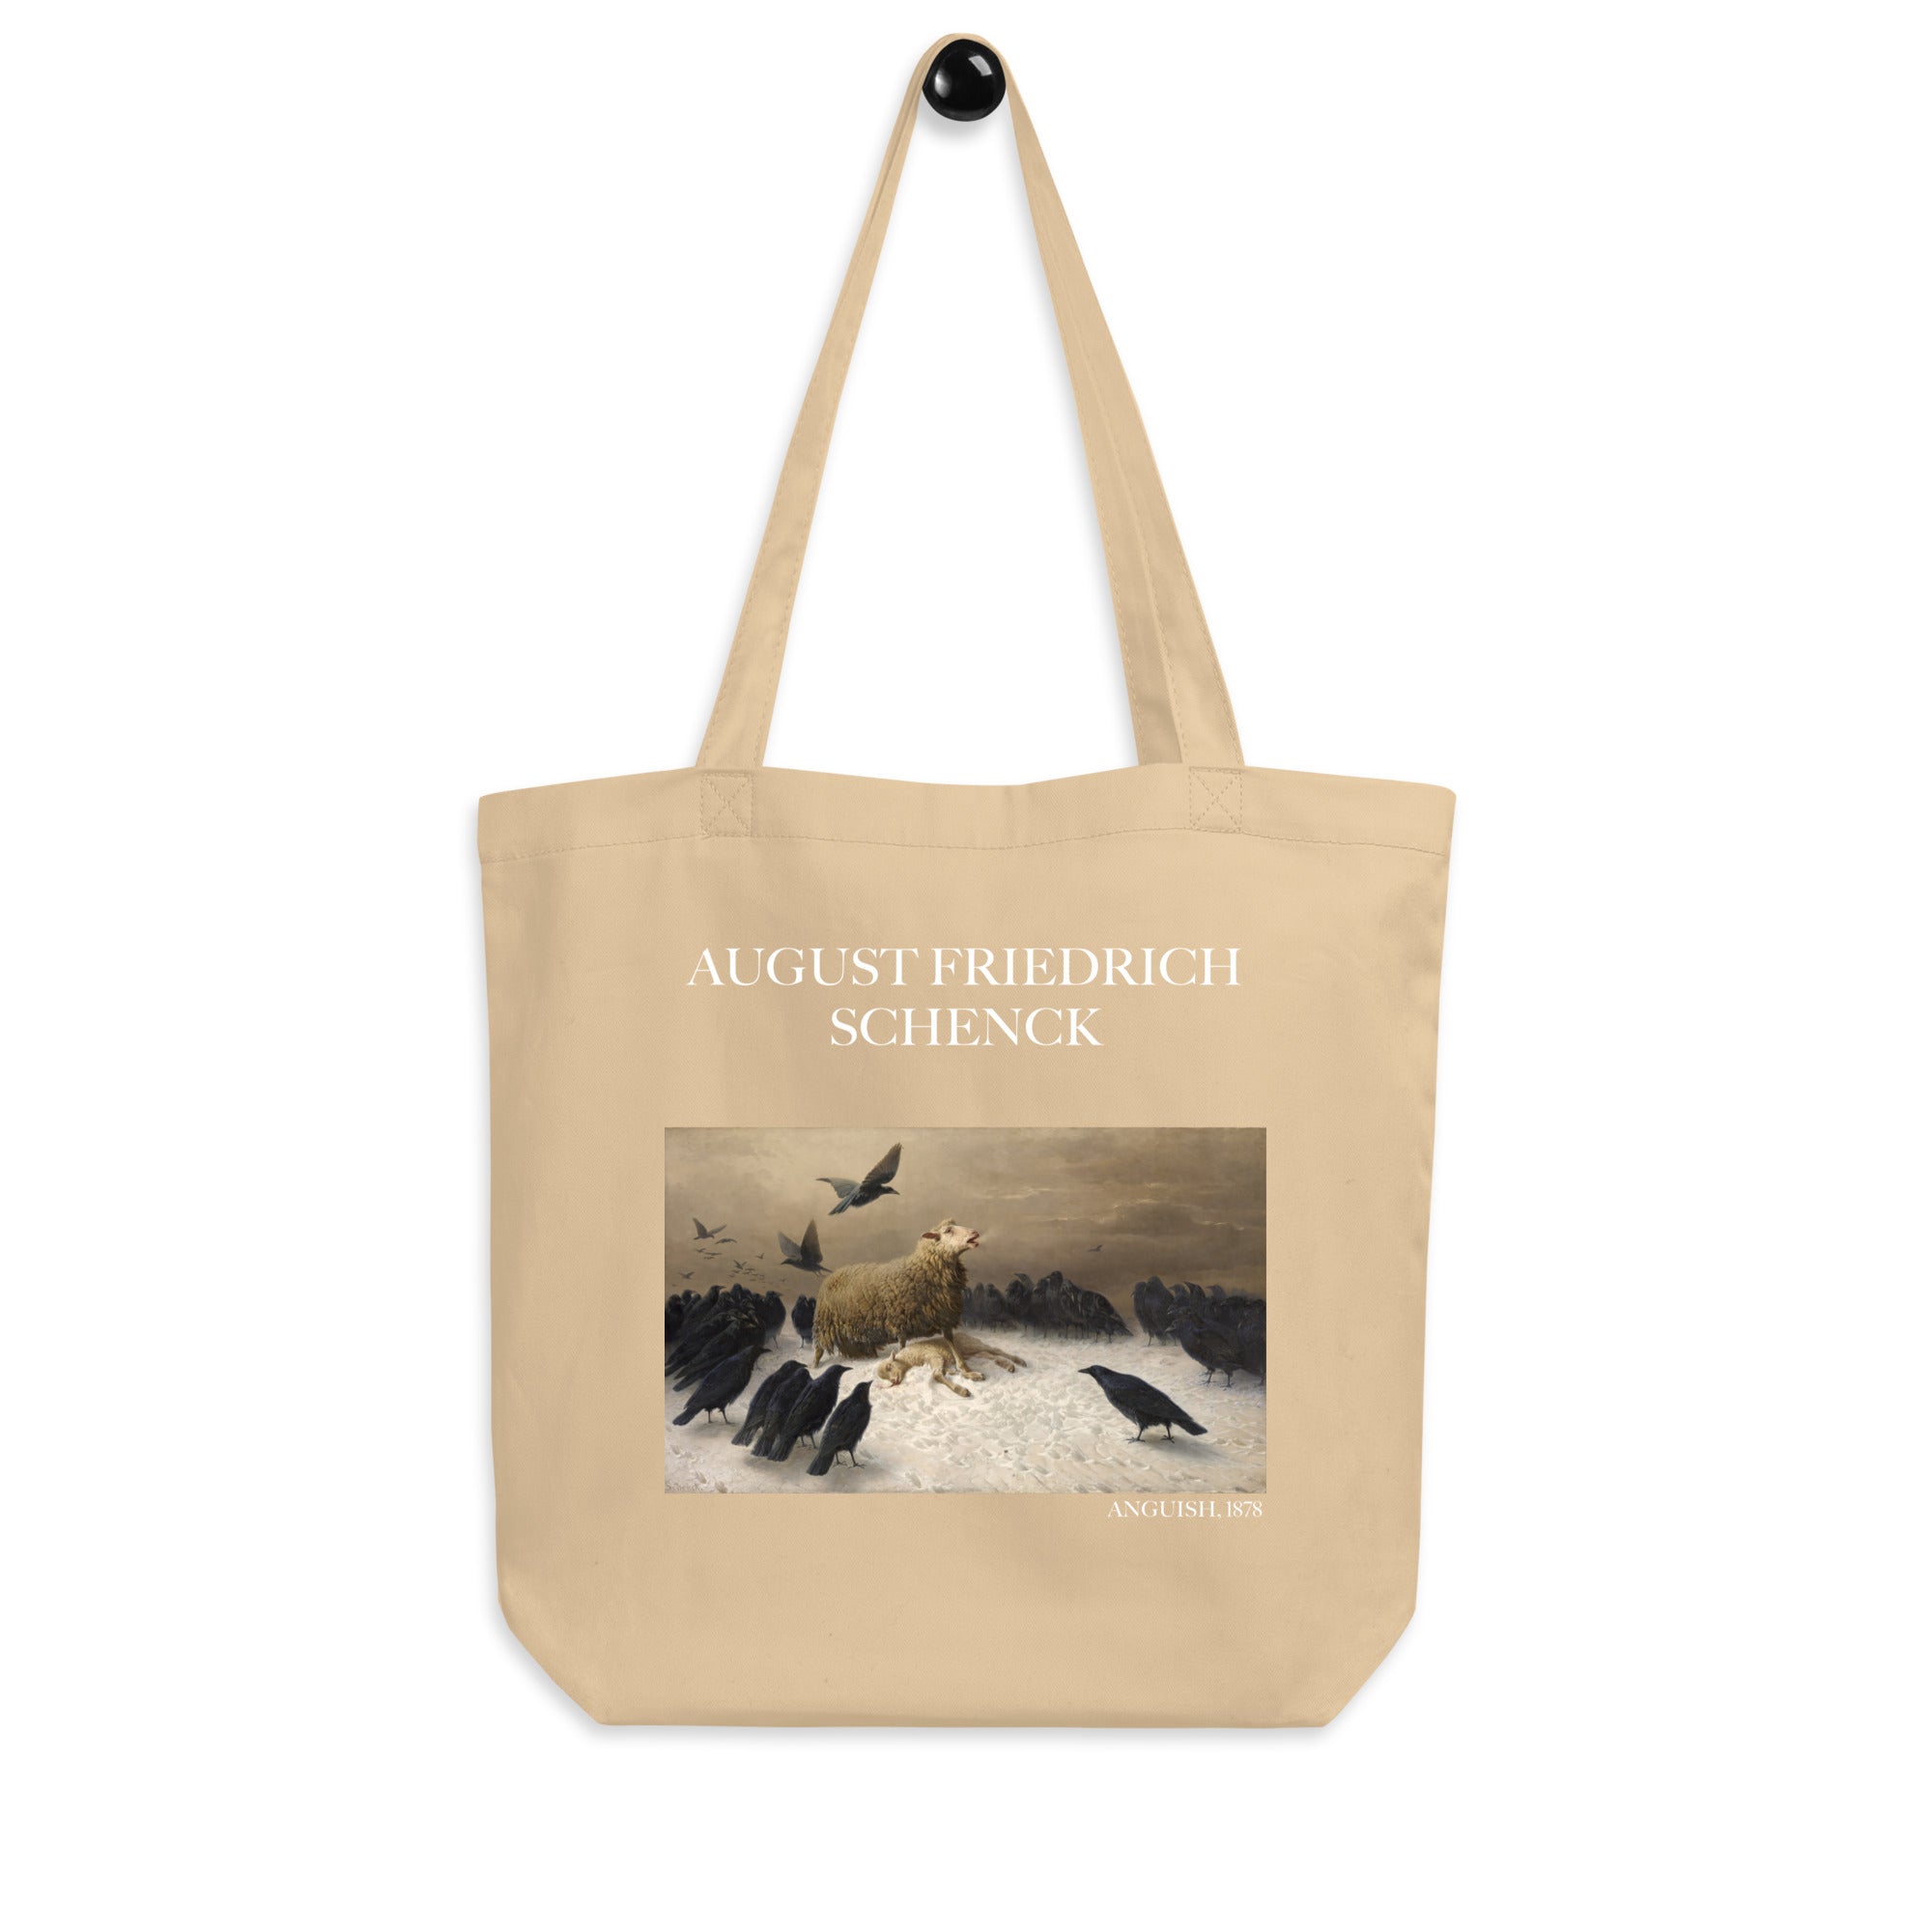 August Friedrich Schenck 'Angst' berühmtes Gemälde Tote Bag | Umweltfreundliche Kunst Tote Bag